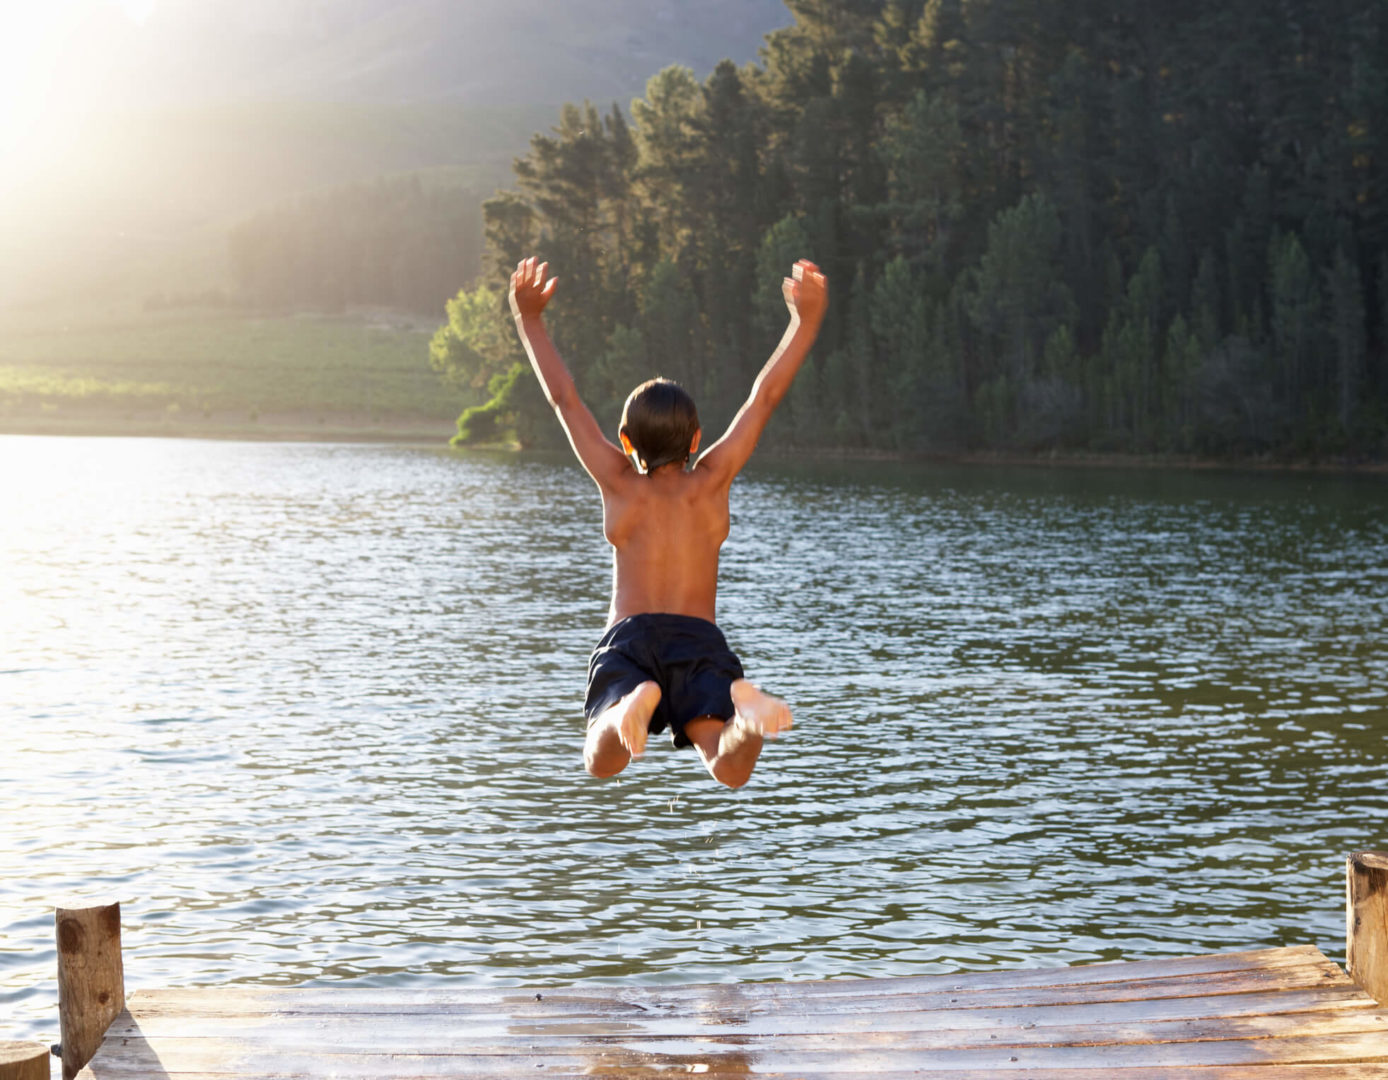 Um menino está saltando em um rio de braços abertos. O dia está ensolarado e o cenário é de mata fechada